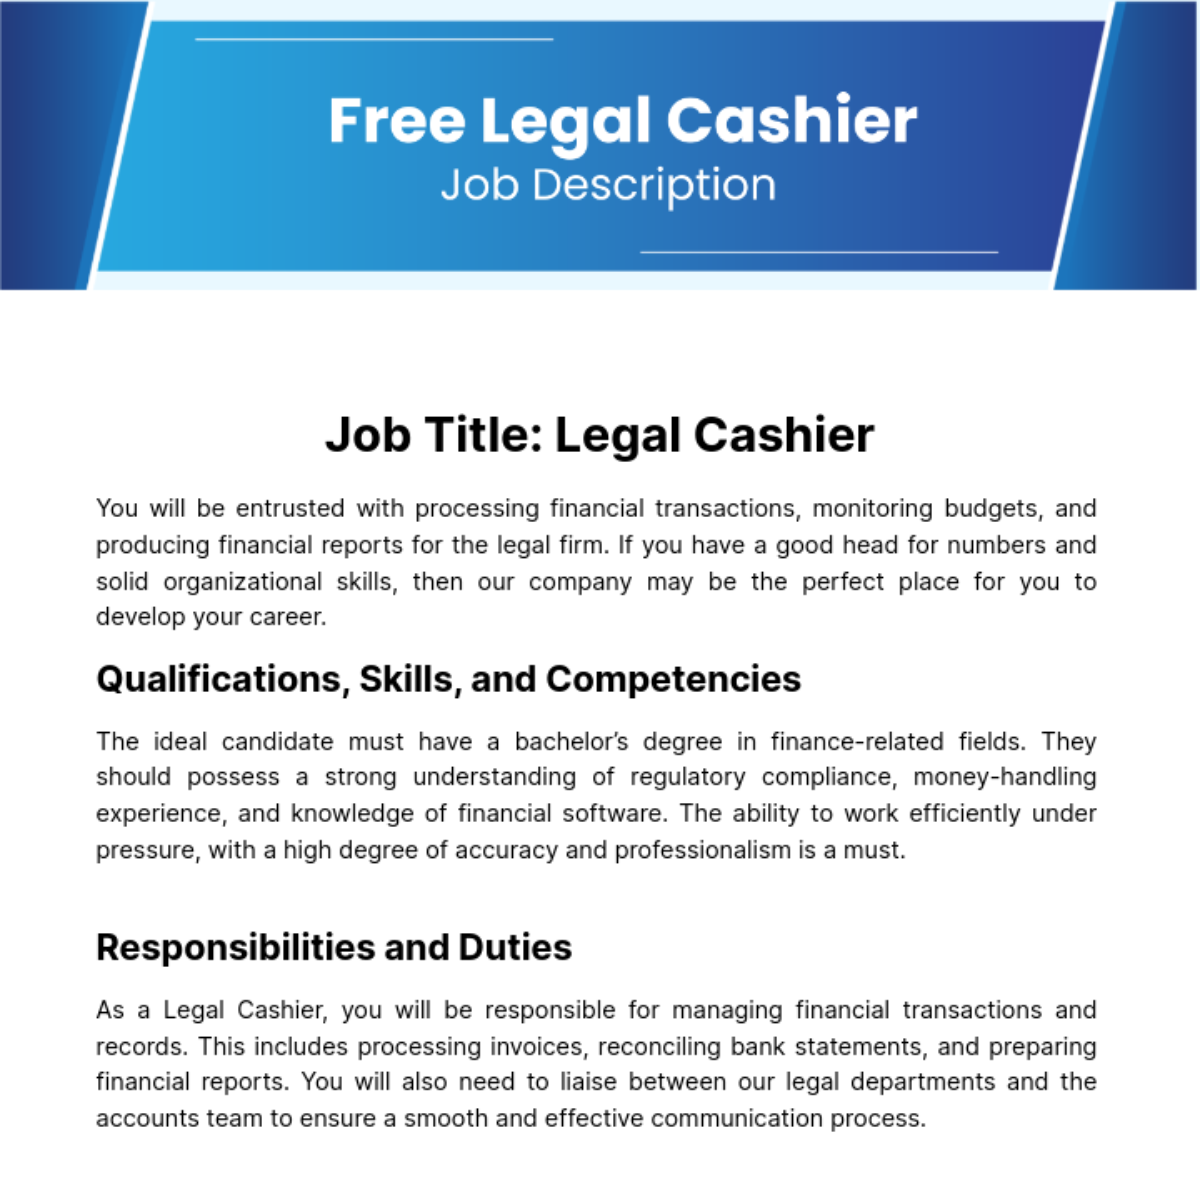 Free Legal Cashier Job Description Template